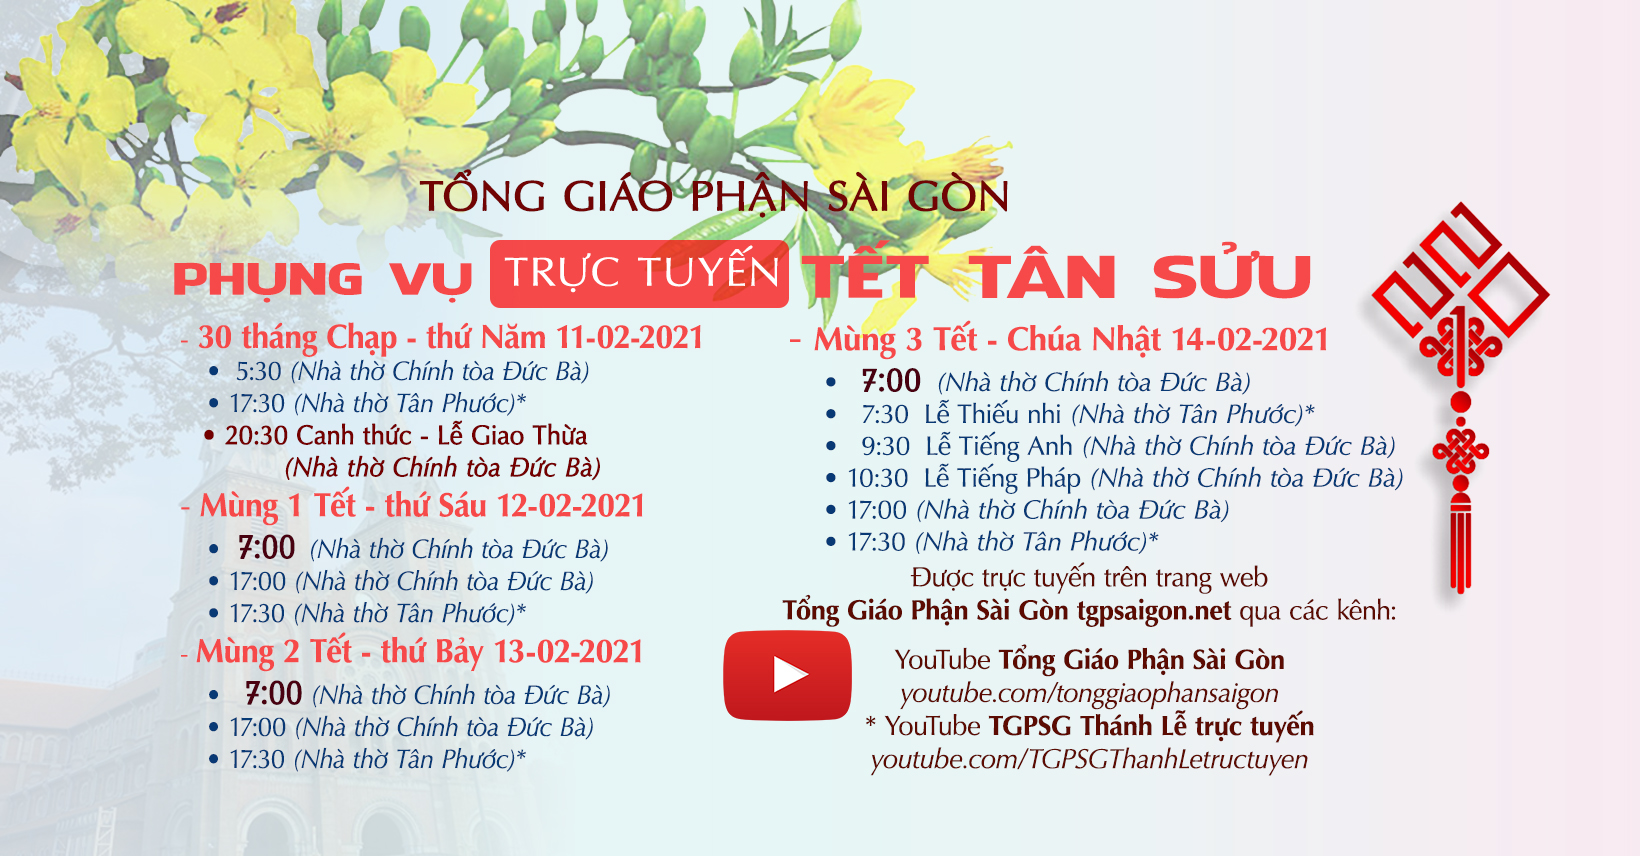 Tổng Giáo phận Sài Gòn: Phụng vụ trực tuyến Tết Tân Sửu 2021